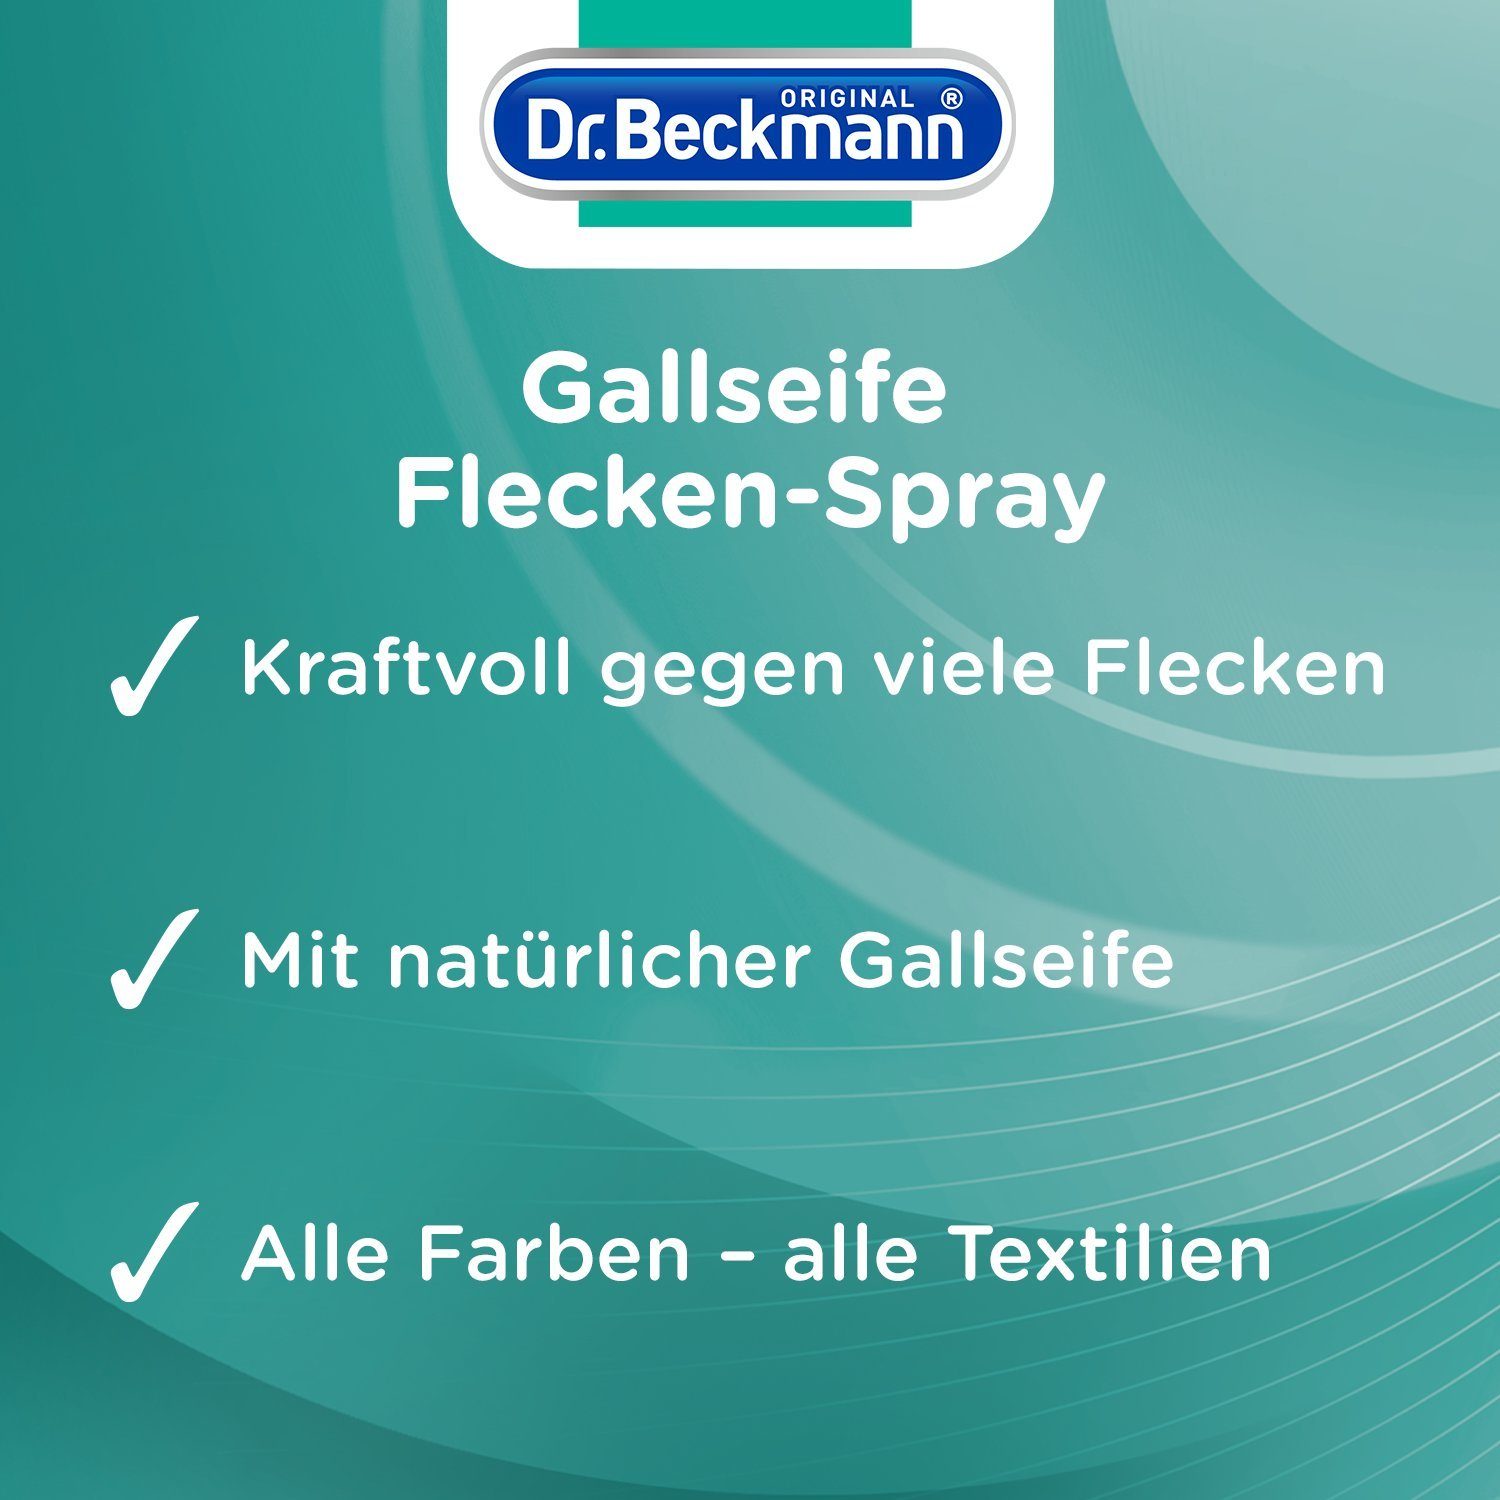 (1-St) Polsterreiniger 250 natürlicher Mit echter, ml Gallseife 1x Beckmann Gallseife, Flecken-Spray, Dr.